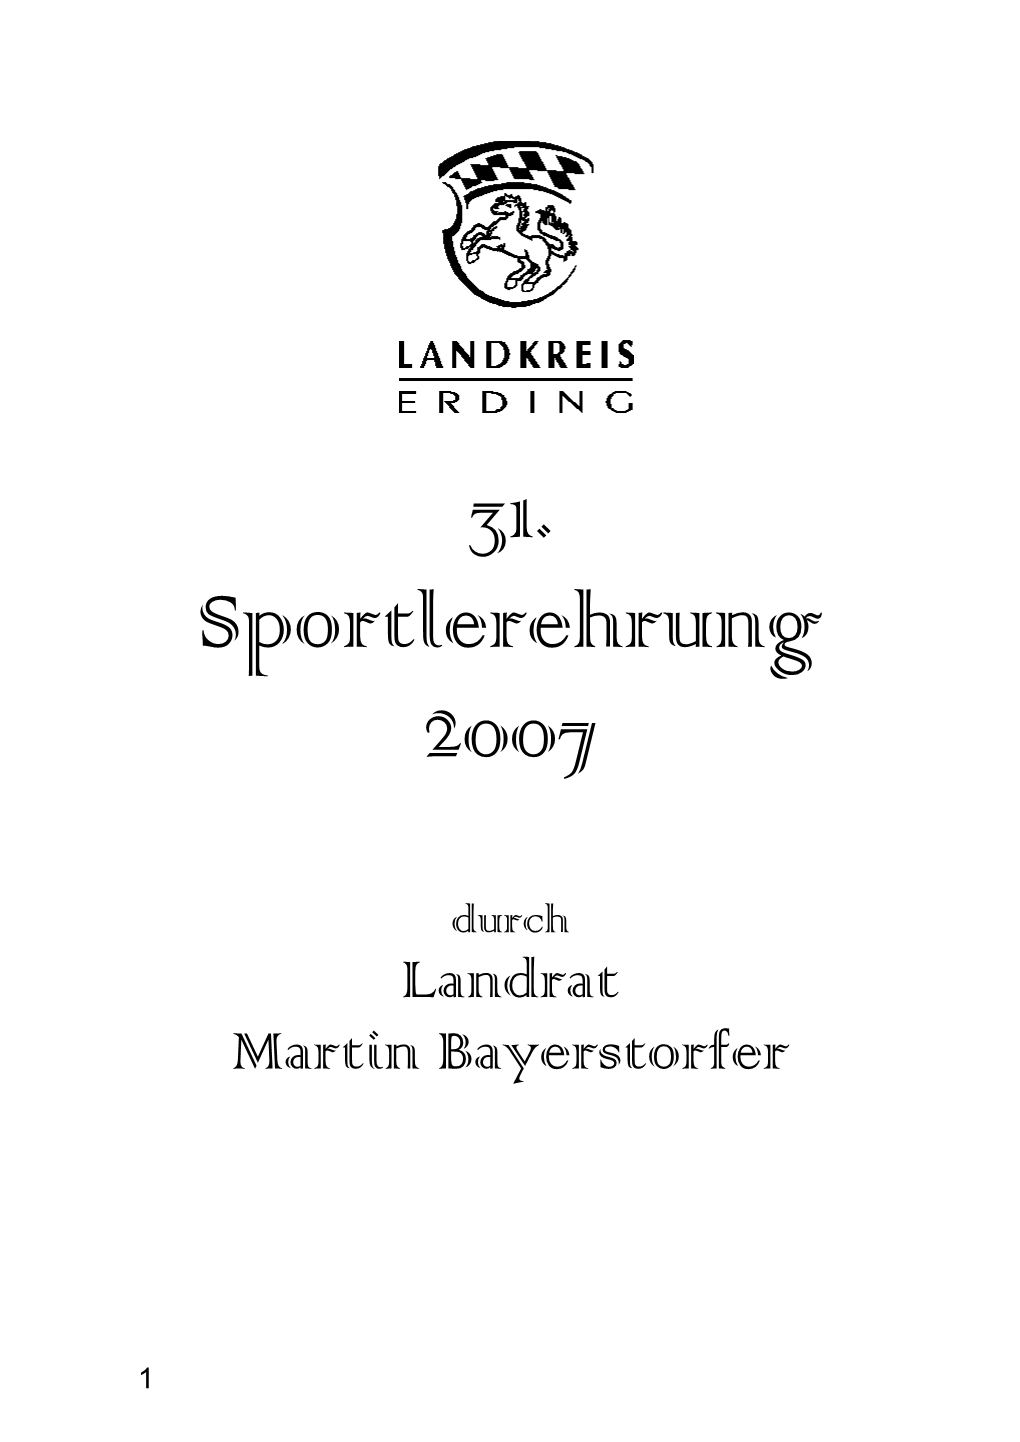 31. Sportlerehrung 2007